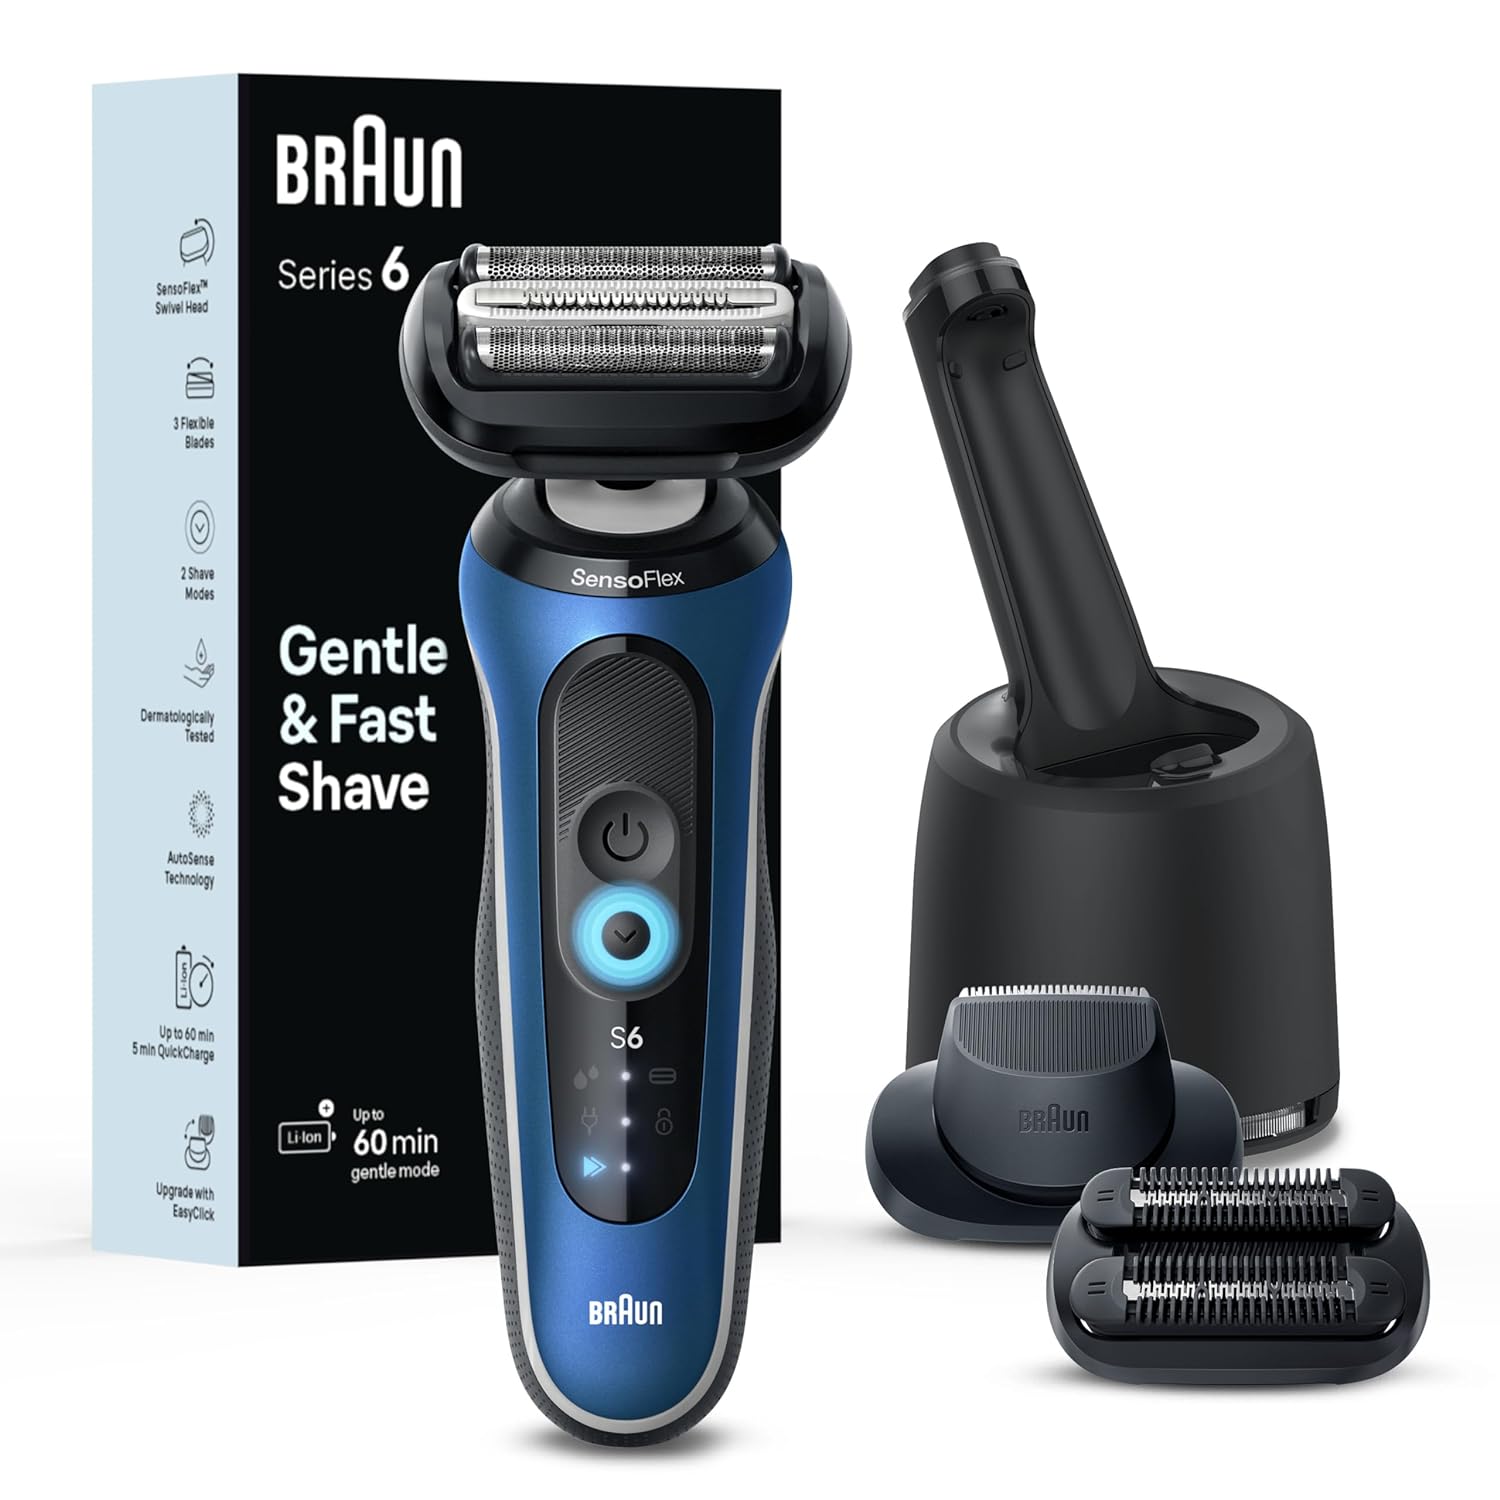 [4美國直購1年保固] Braun 6系列 6177cc 電鬍刀 S6 電動刮鬍刀 乾濕兩用 德國製 Series 6